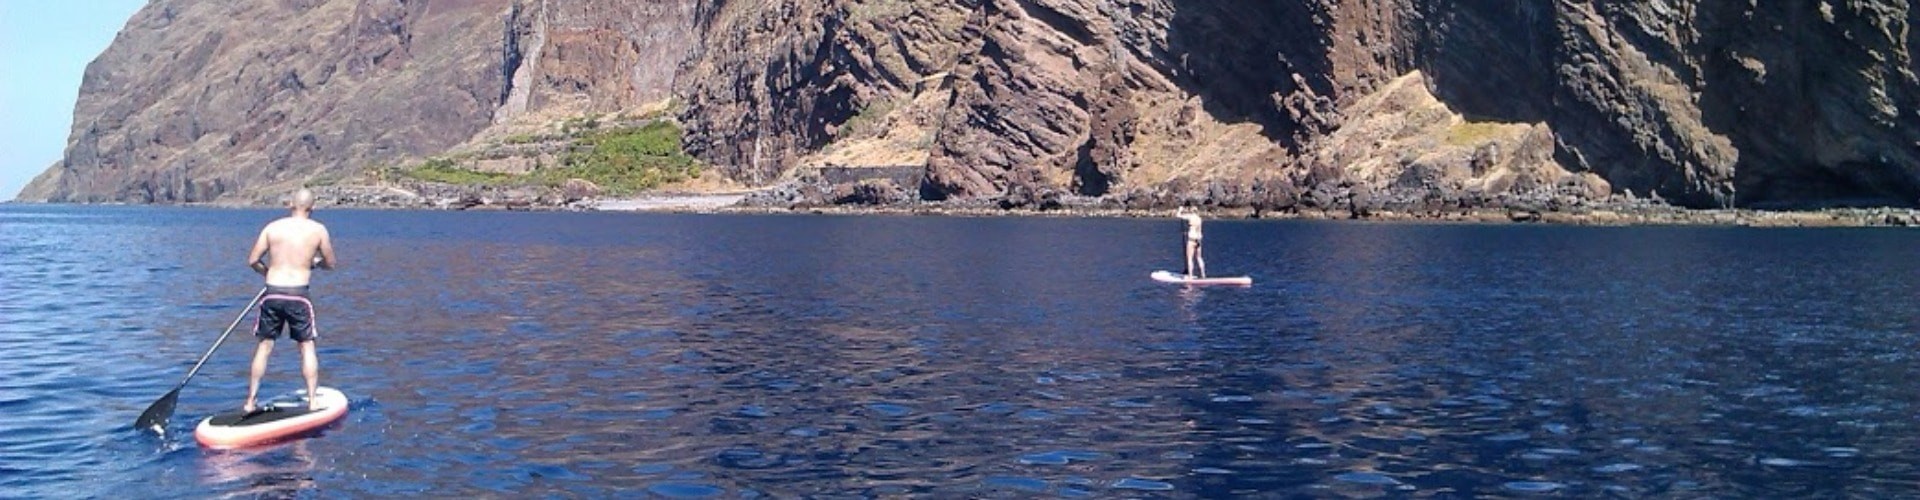 Stand Up Paddle na Ilha da Madeira.